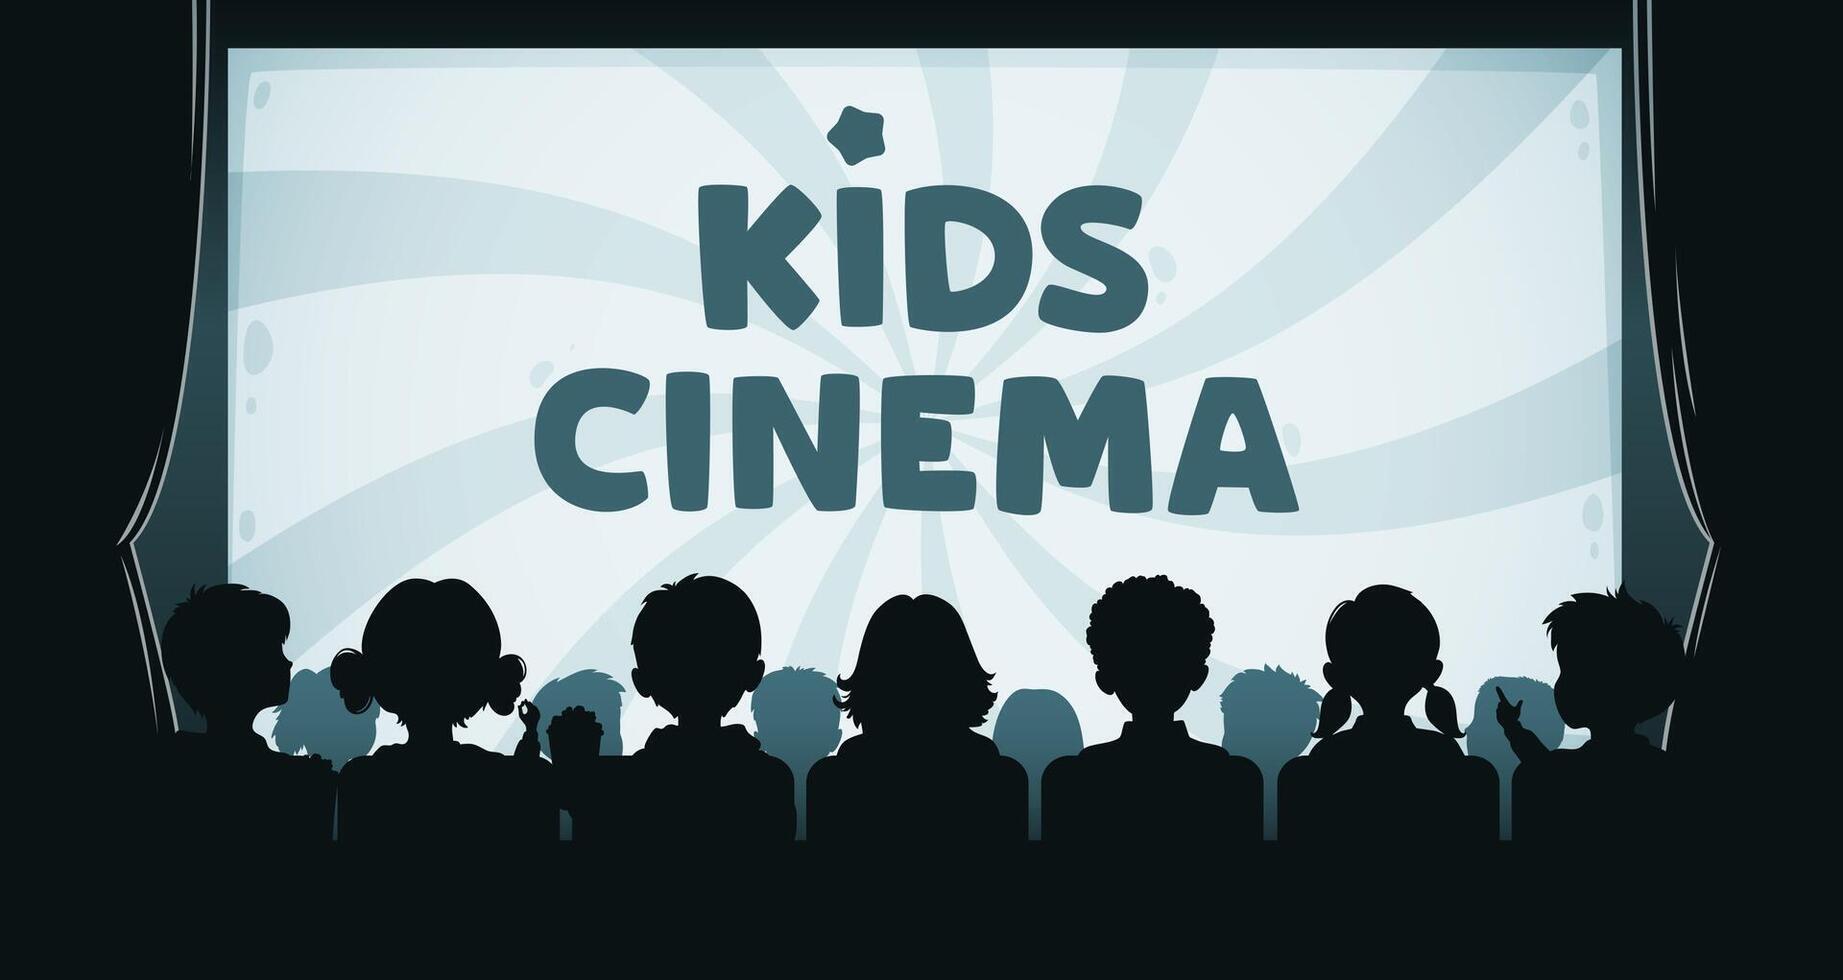 niños cine, niños película teatro silueta vector